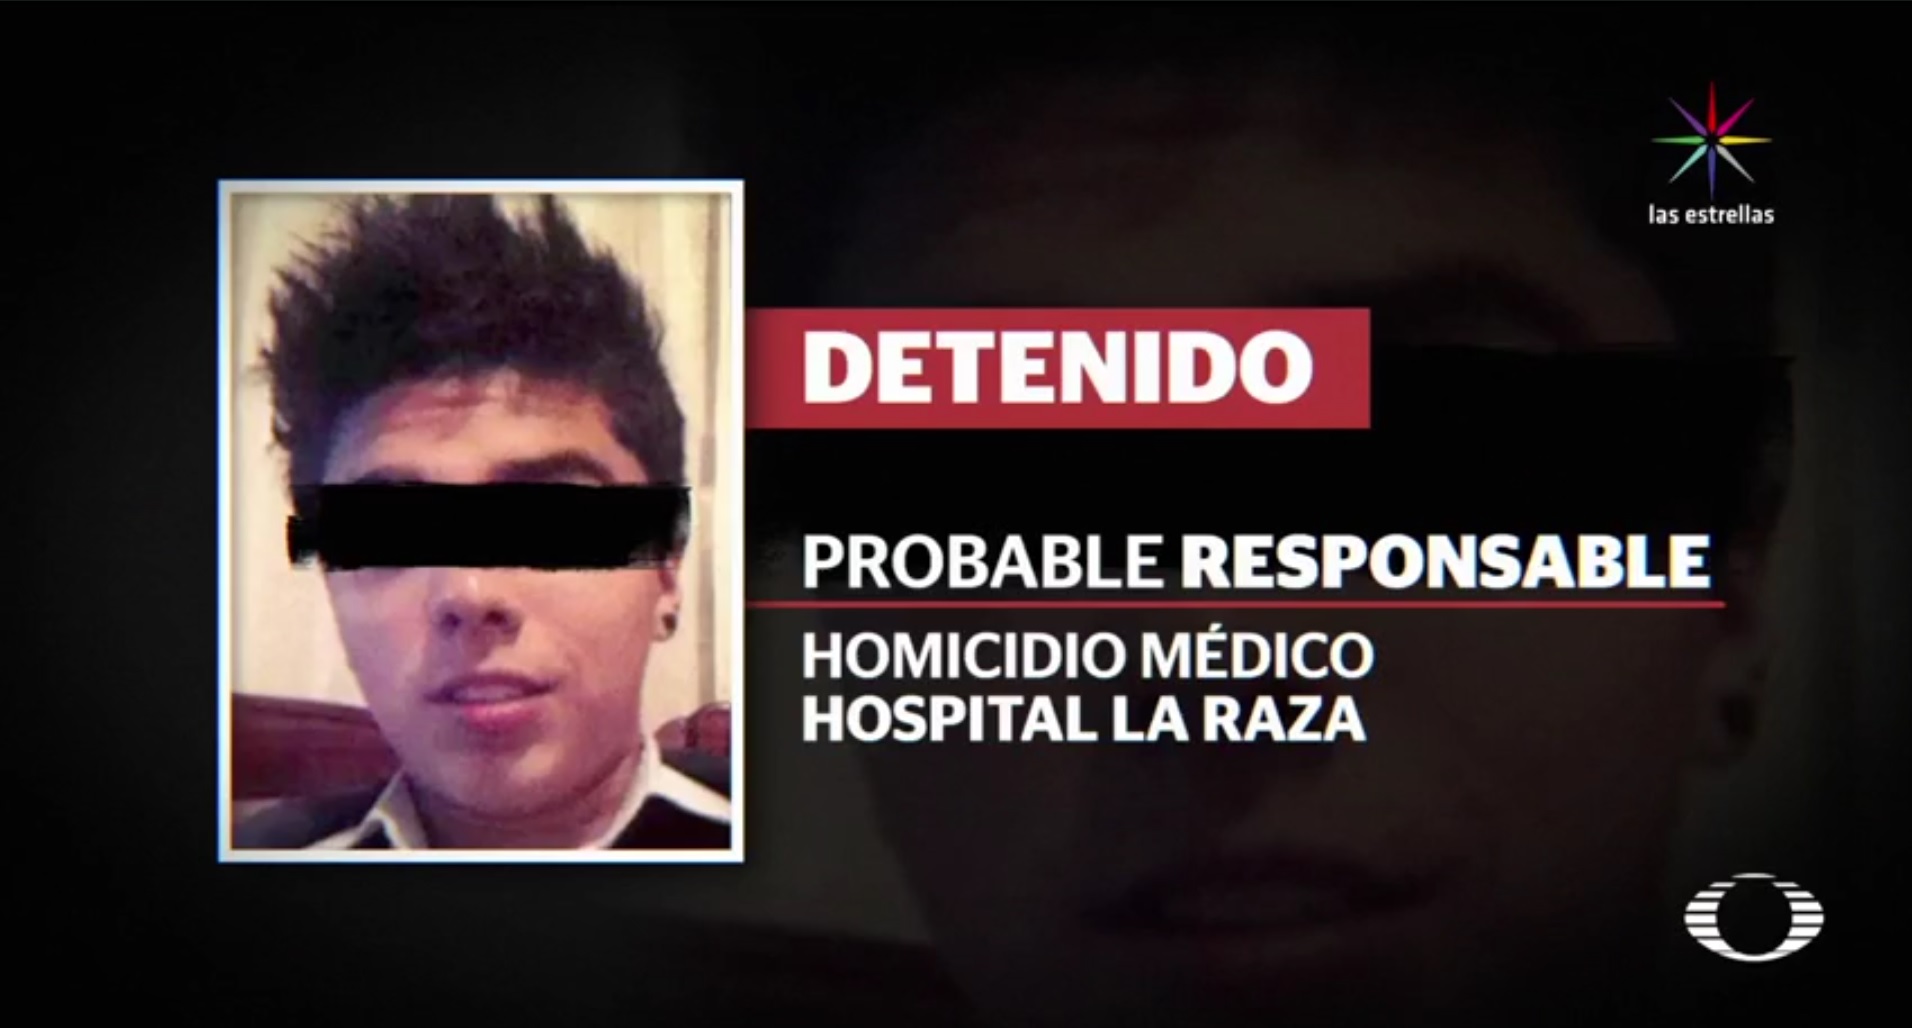 El presunto asesino es identificado como Antonio Hernández. (Noticieros Televisa)